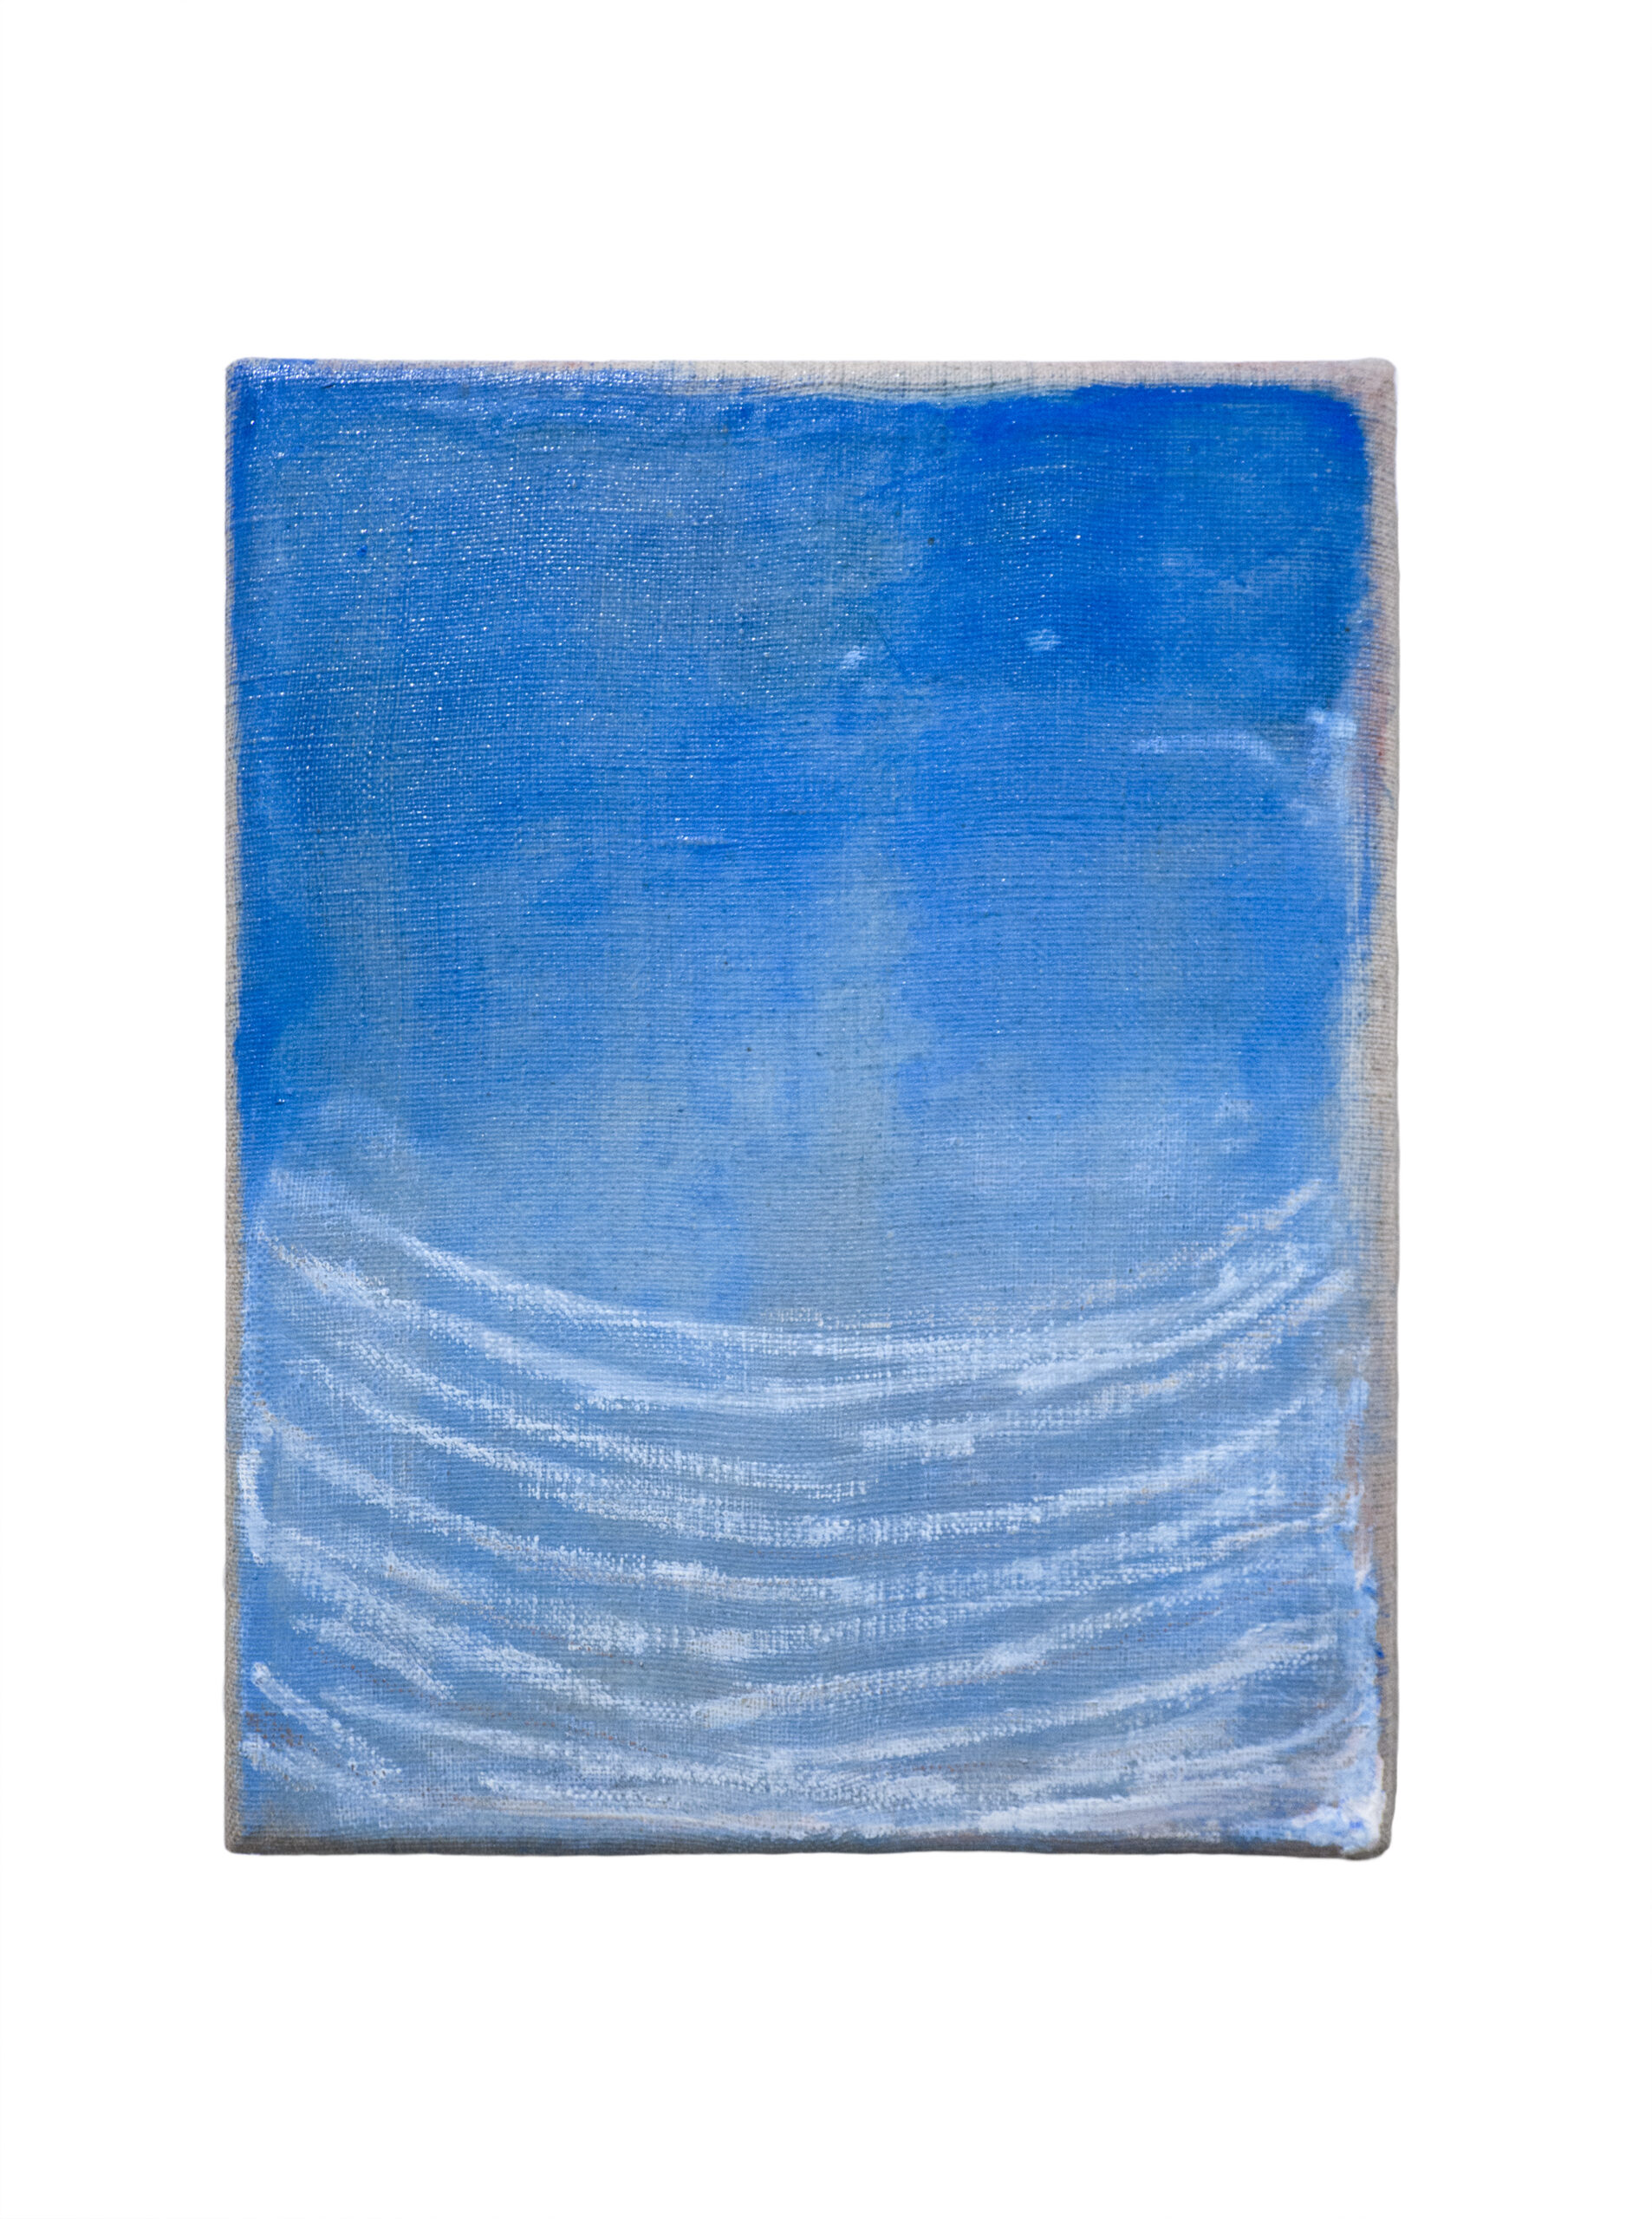 Mother and sky. Echoing (2) , 2020, olio e pastelli su tela, 38x32 cm - Miriam Del Seppia - cortesia dell'artista